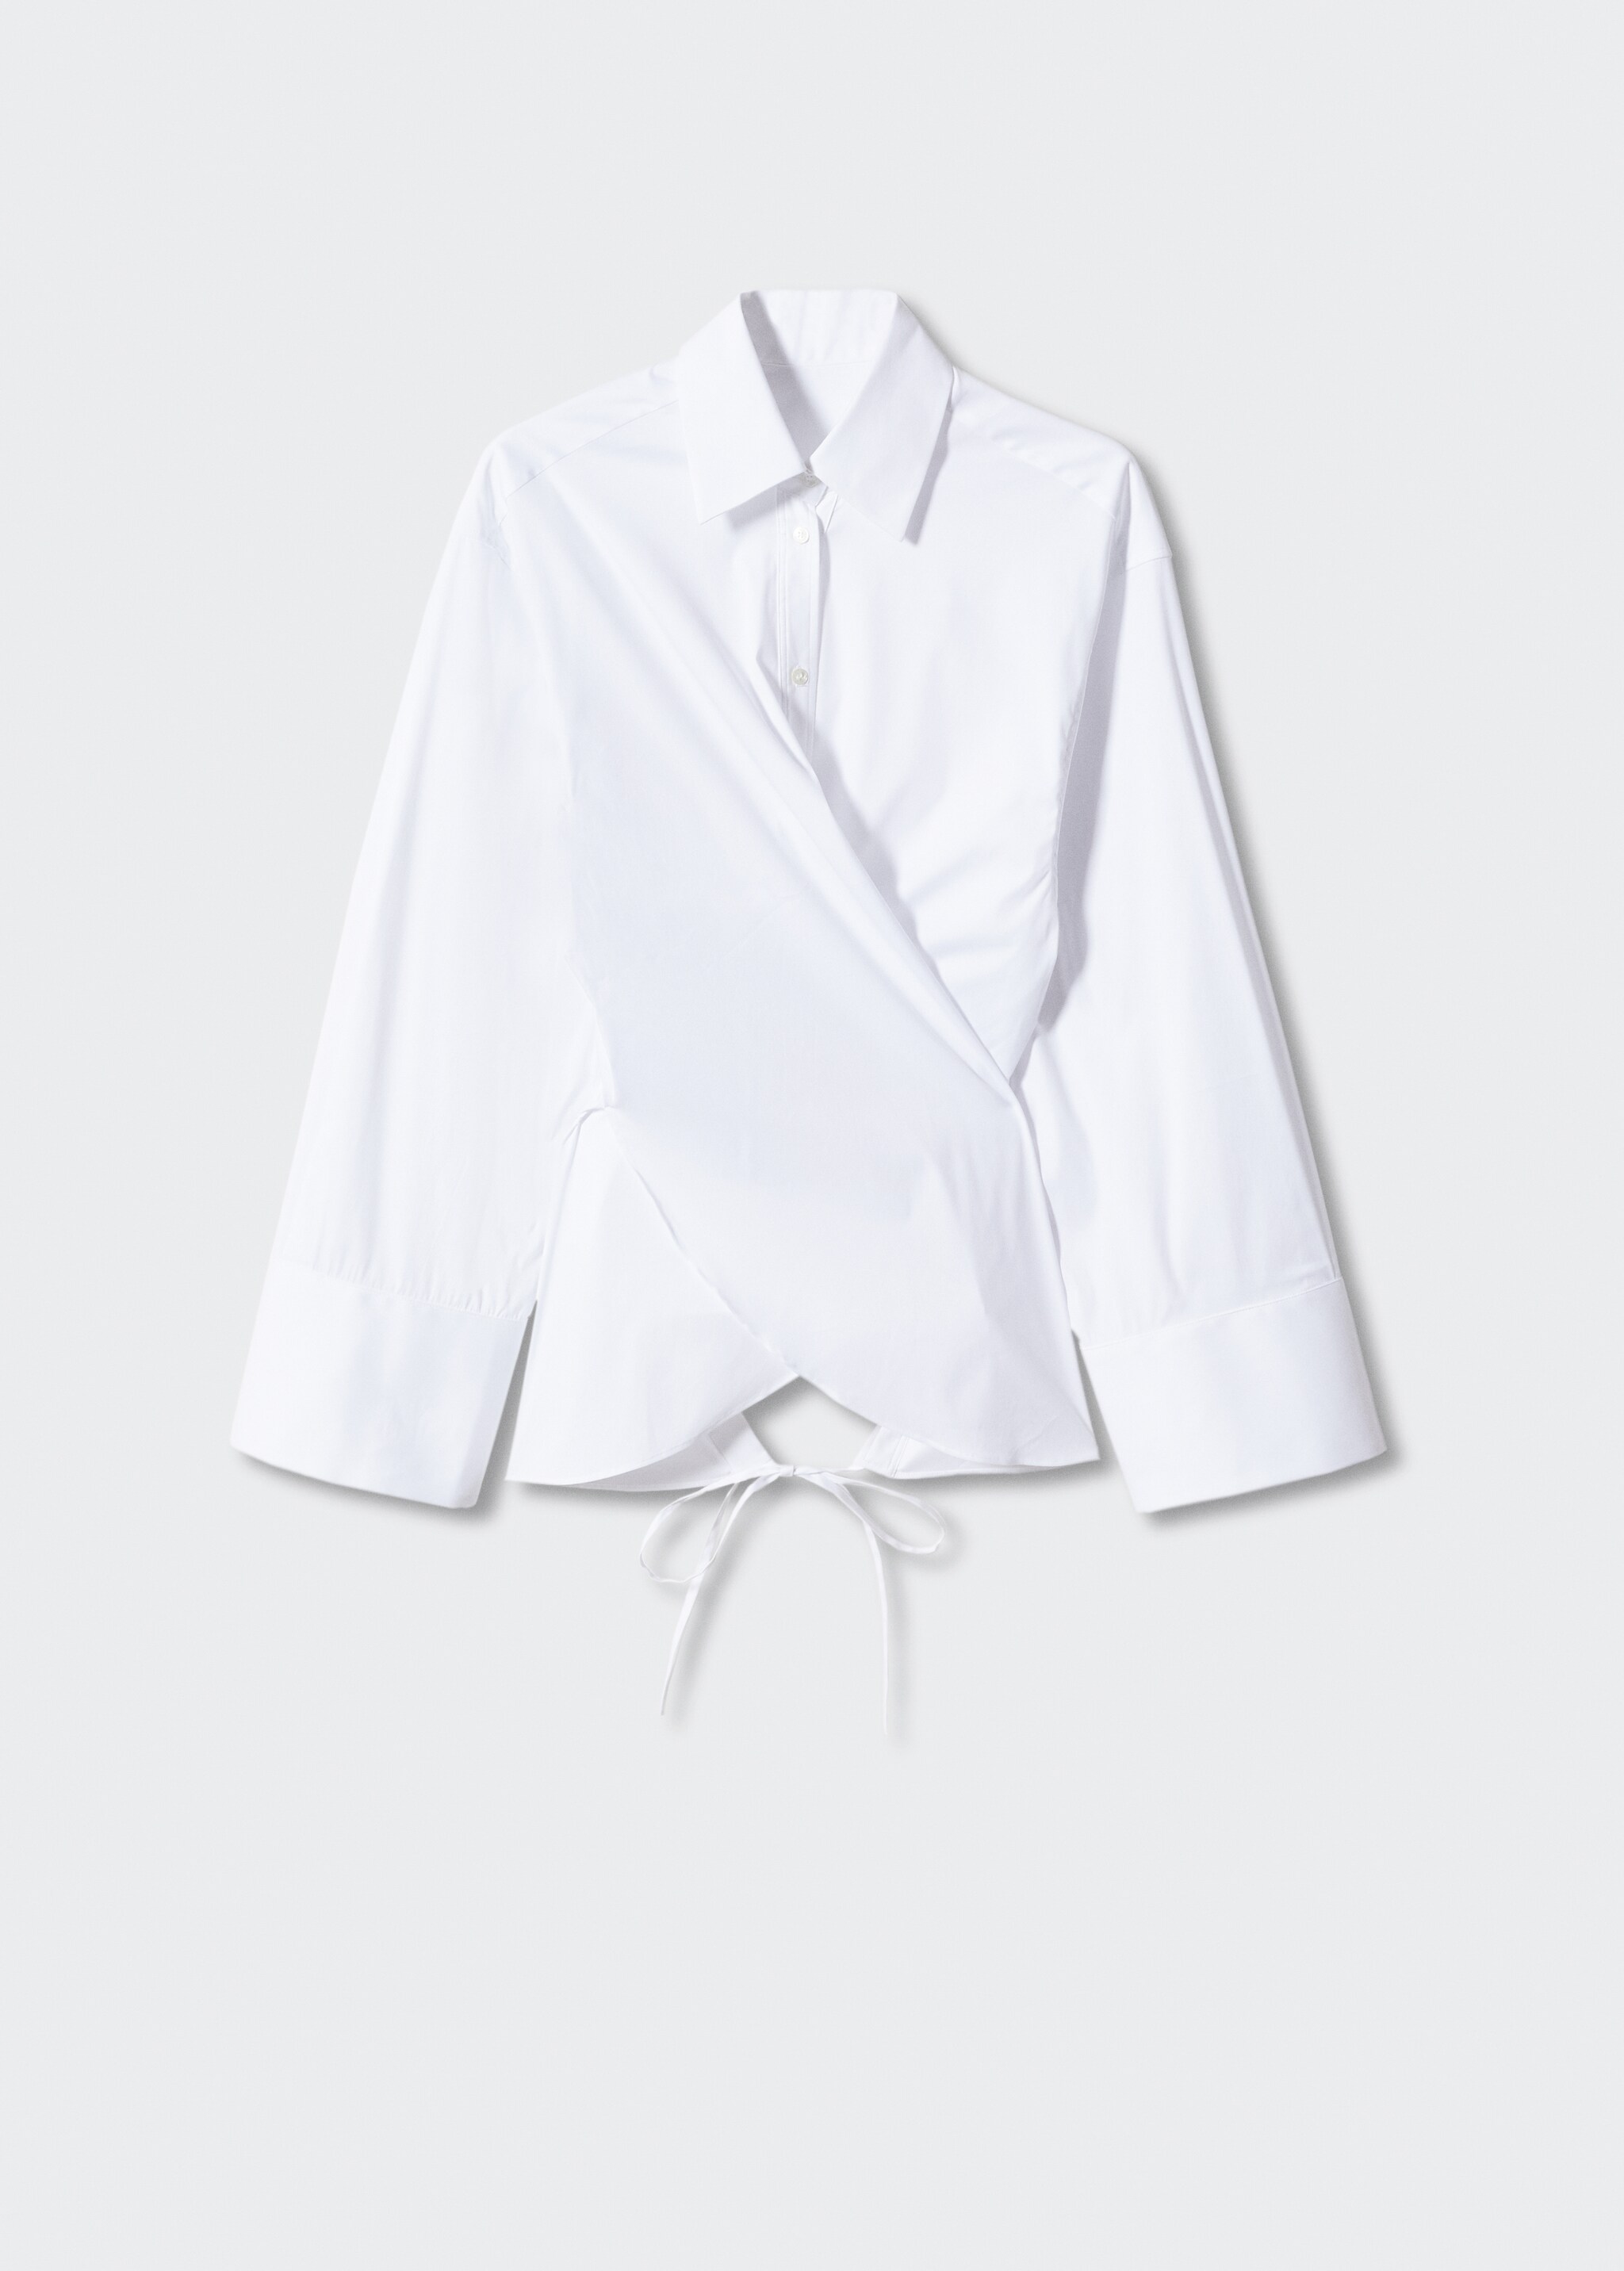 Camisa algodón cruzada - Artículo sin modelo